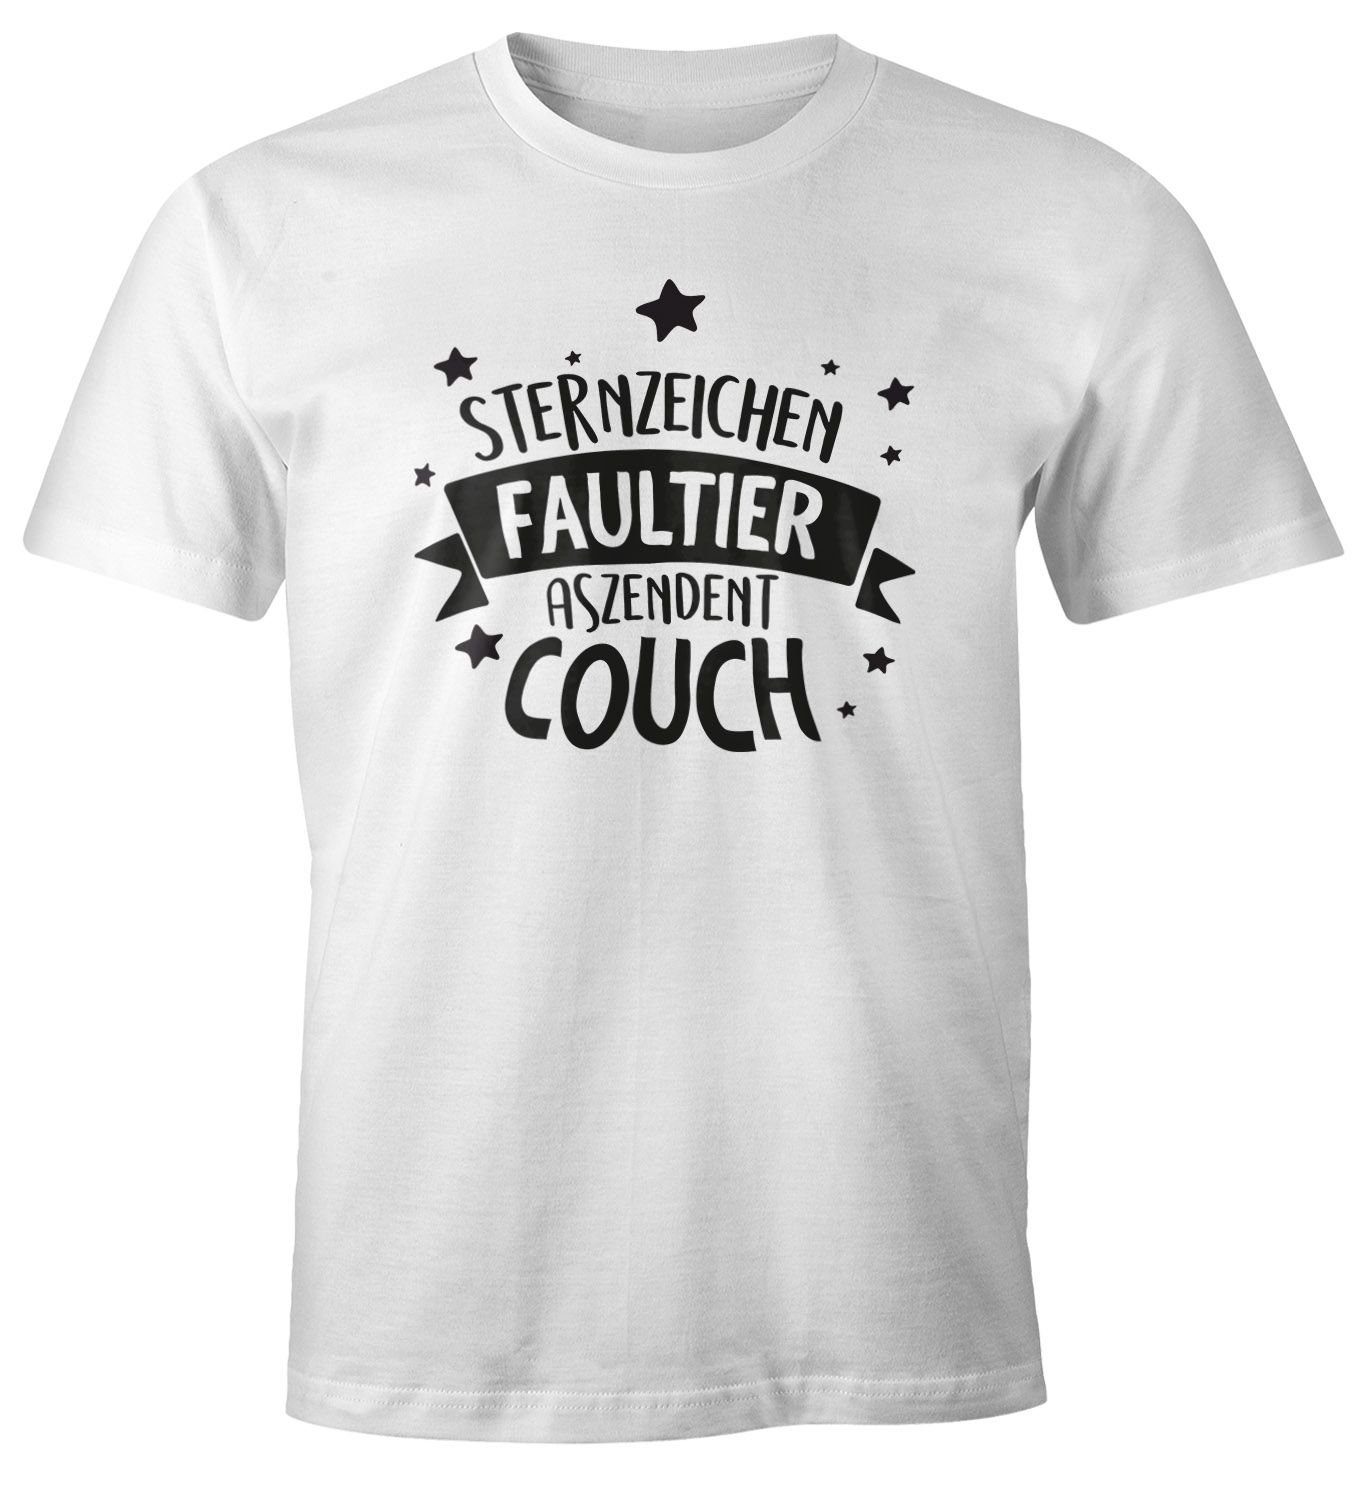 Fun-Shirt Herren mit Aszendent T-Shirt Faultier. Print-Shirt Print Moonworks® Spruch Sternzeichen Couch. lustig mit MoonWorks Motiv